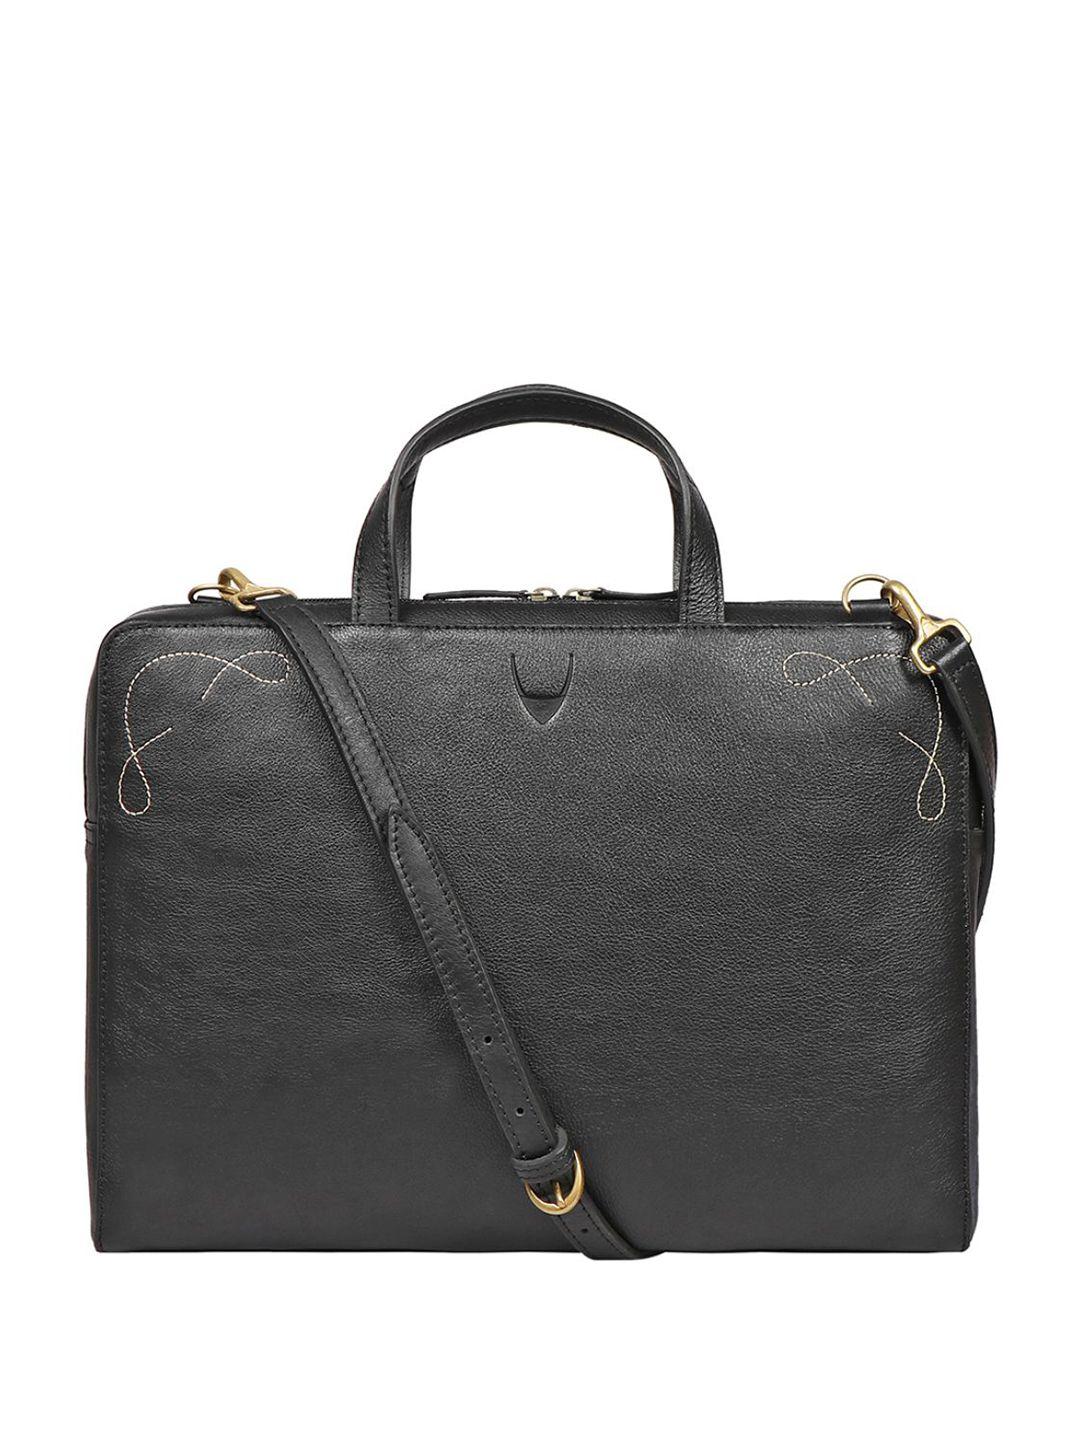 hidesign-leather-messenger-bag